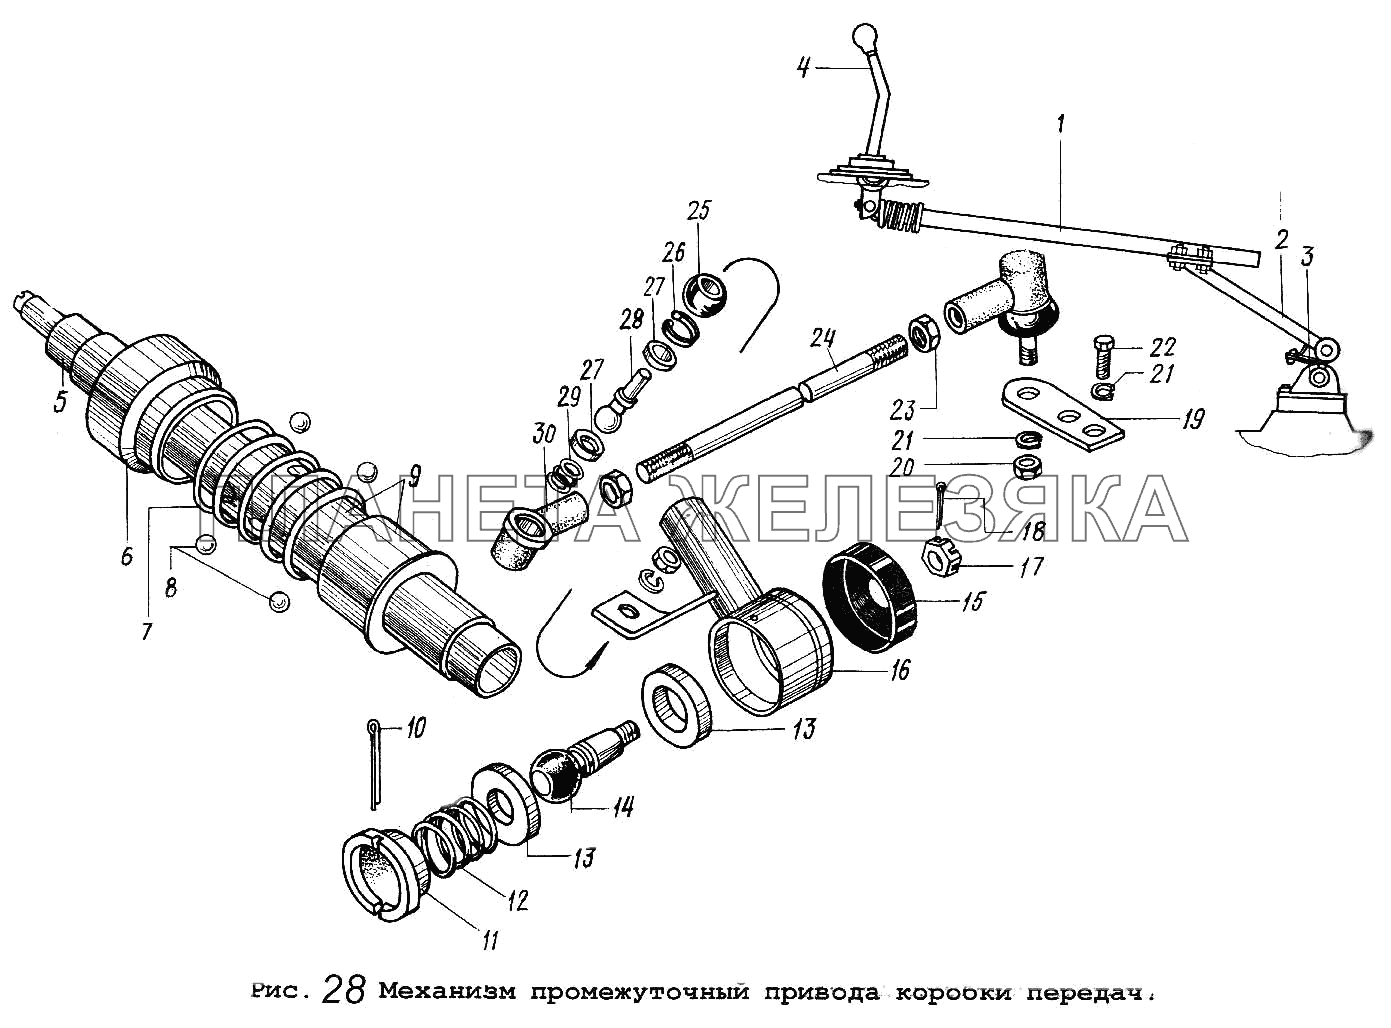 Механизм промежуточный привода коробки передач МАЗ-5551